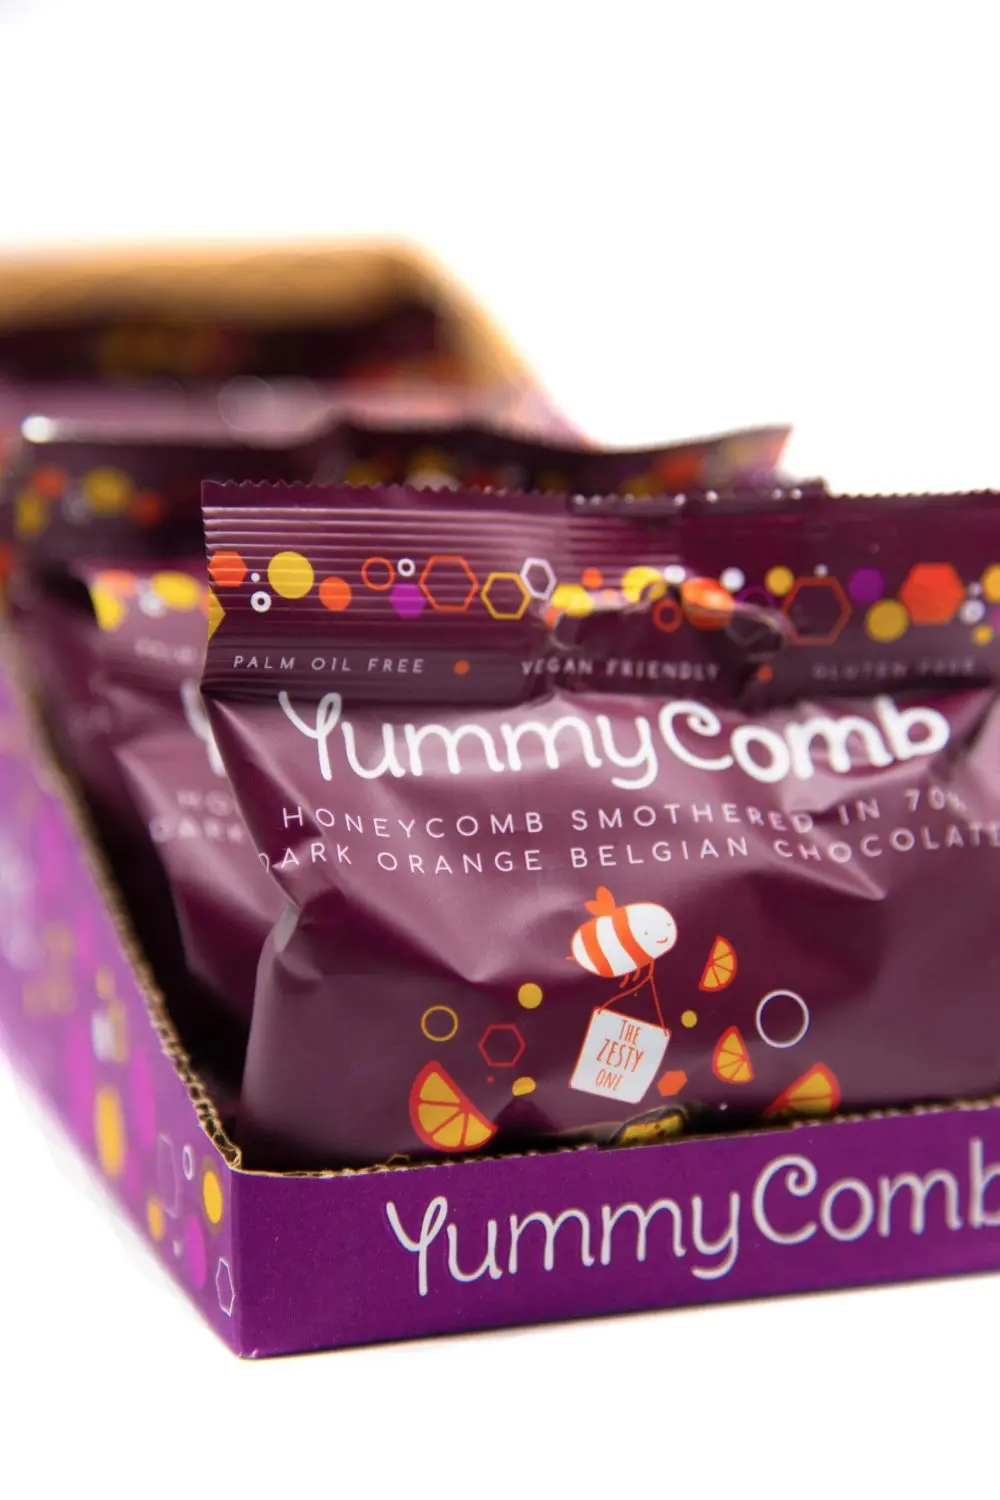 Yummycomb 70% Dark Orange Belgian Chocolate Honeycomb snack Packs (40g) vegan friendly chocolate